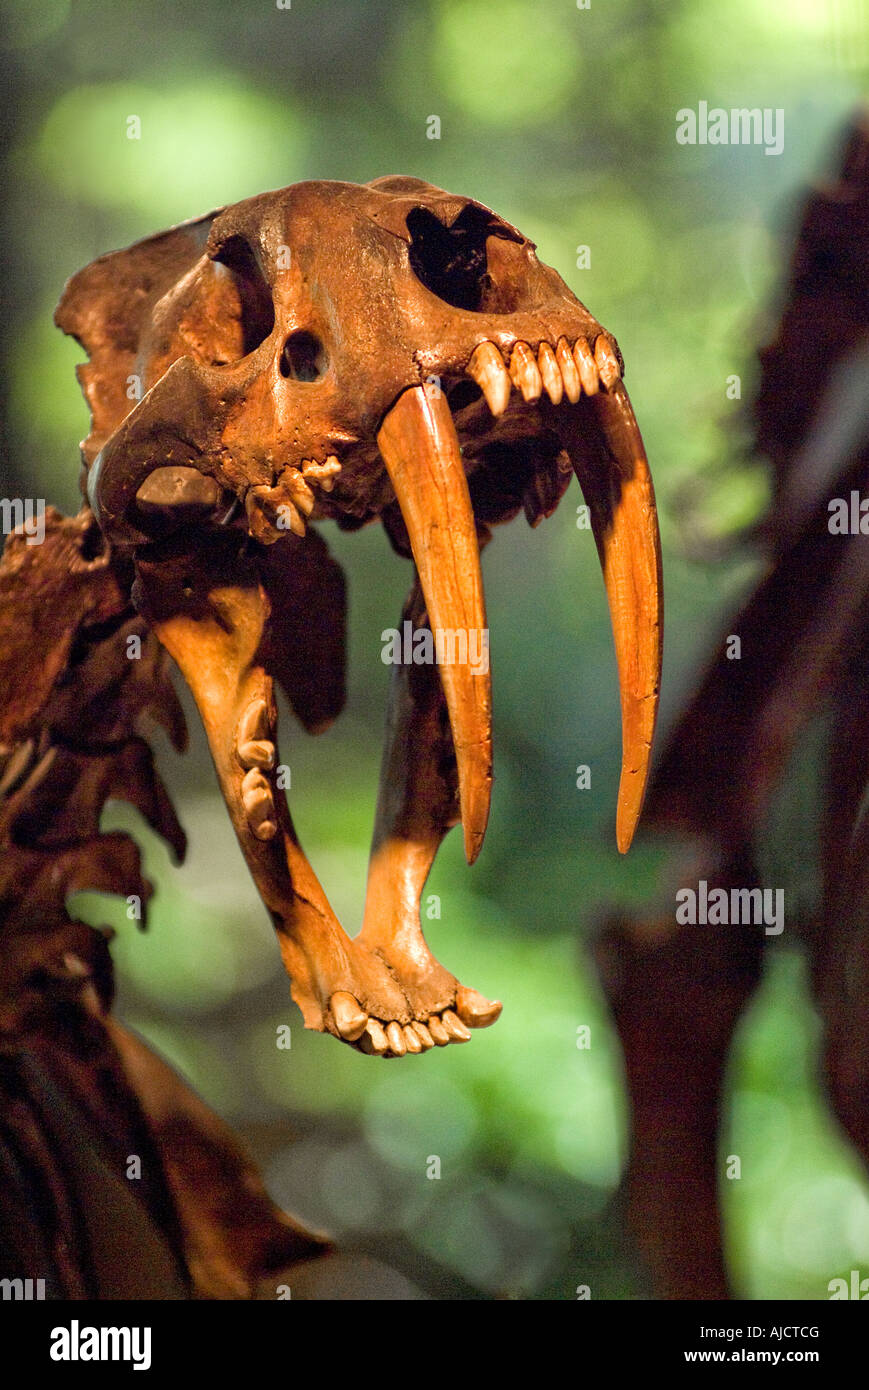 Saber dente tigre dentata dello scheletro cranio George C la pagina di Storia Naturale Il museo di scoperta di Rancho La Brea Tar Pits Los Angeles Foto Stock